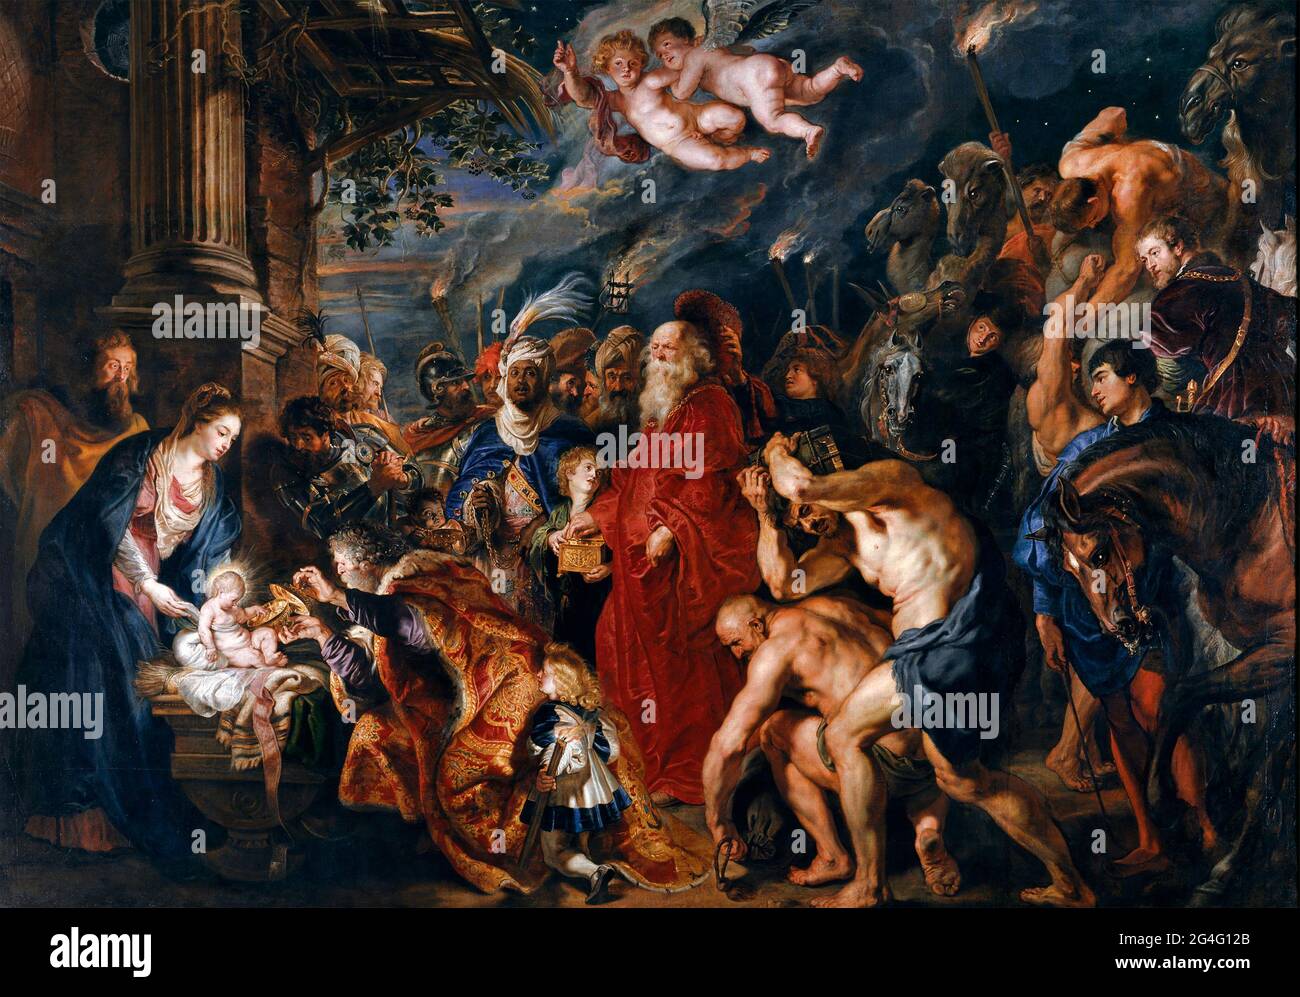 L'adoration des Mages par Peter Paul Rubens (1577-1640), huile sur toile, v.1628-29 Banque D'Images